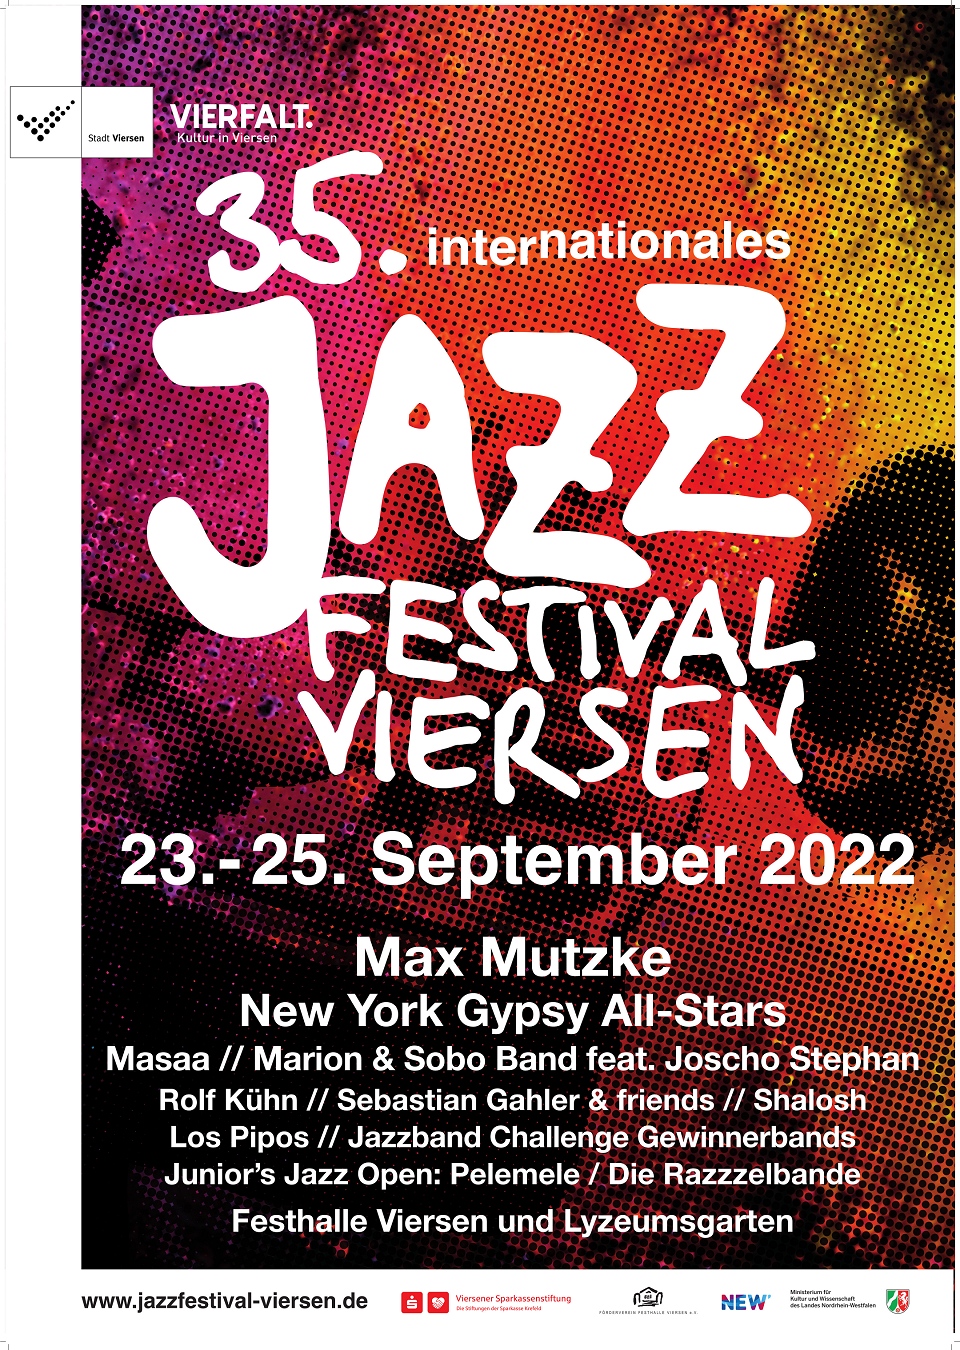 Werbeplakat für das 35. Internationale Jazzfestival Viersen 2022